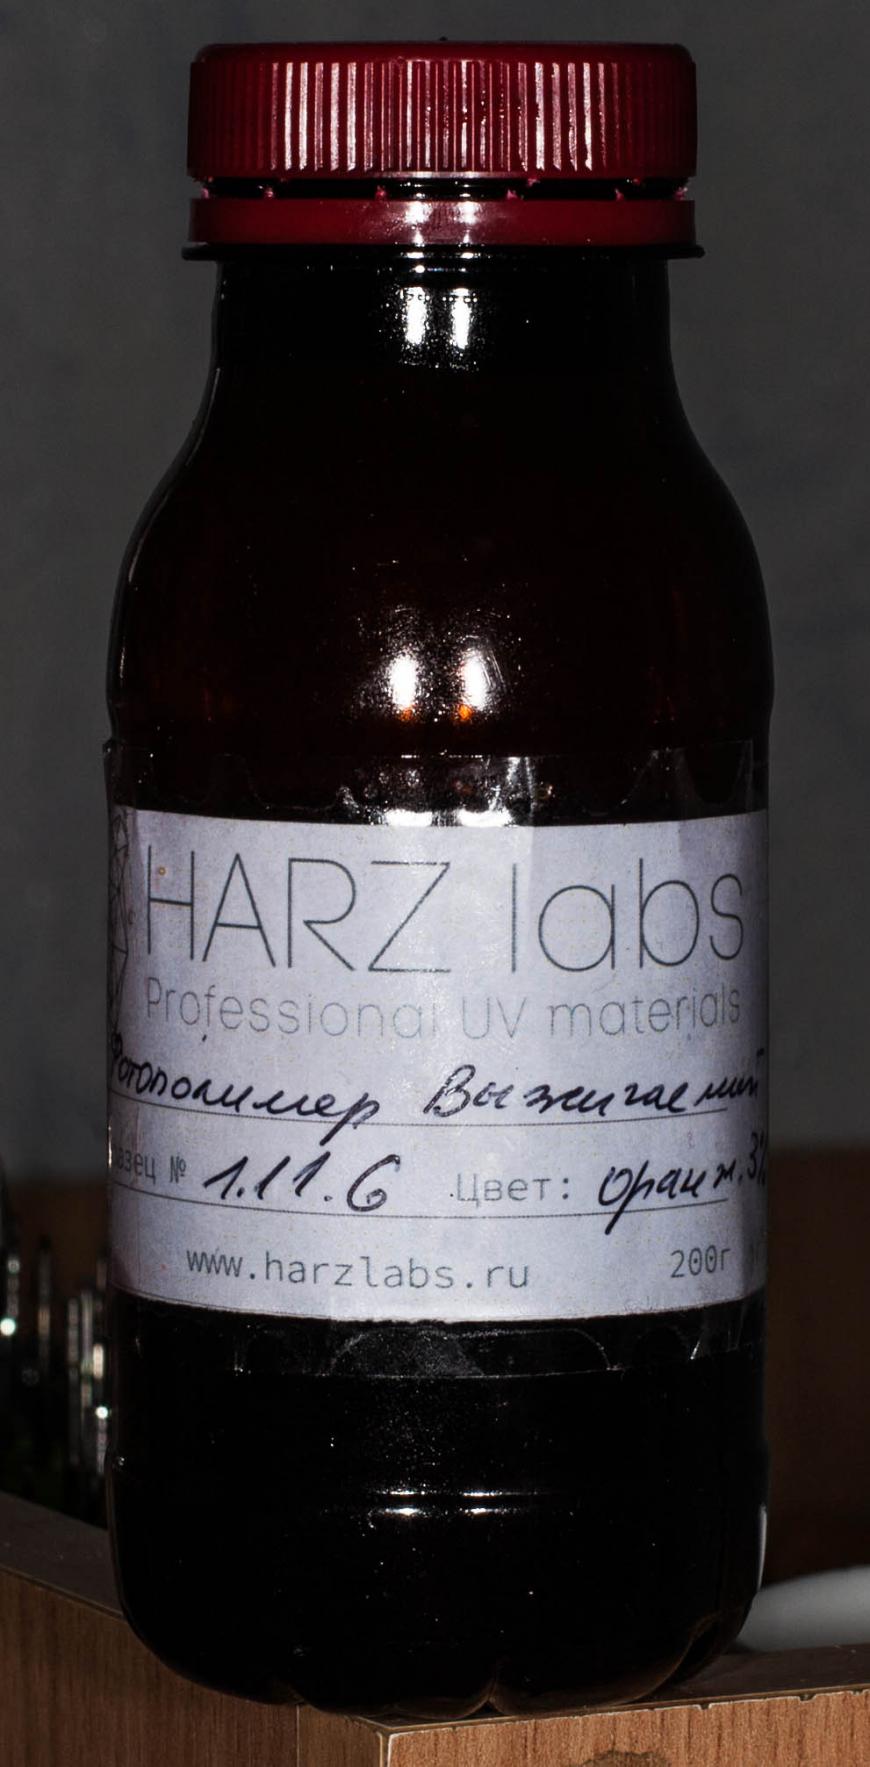 О выжигаемом полимере от Harz labs